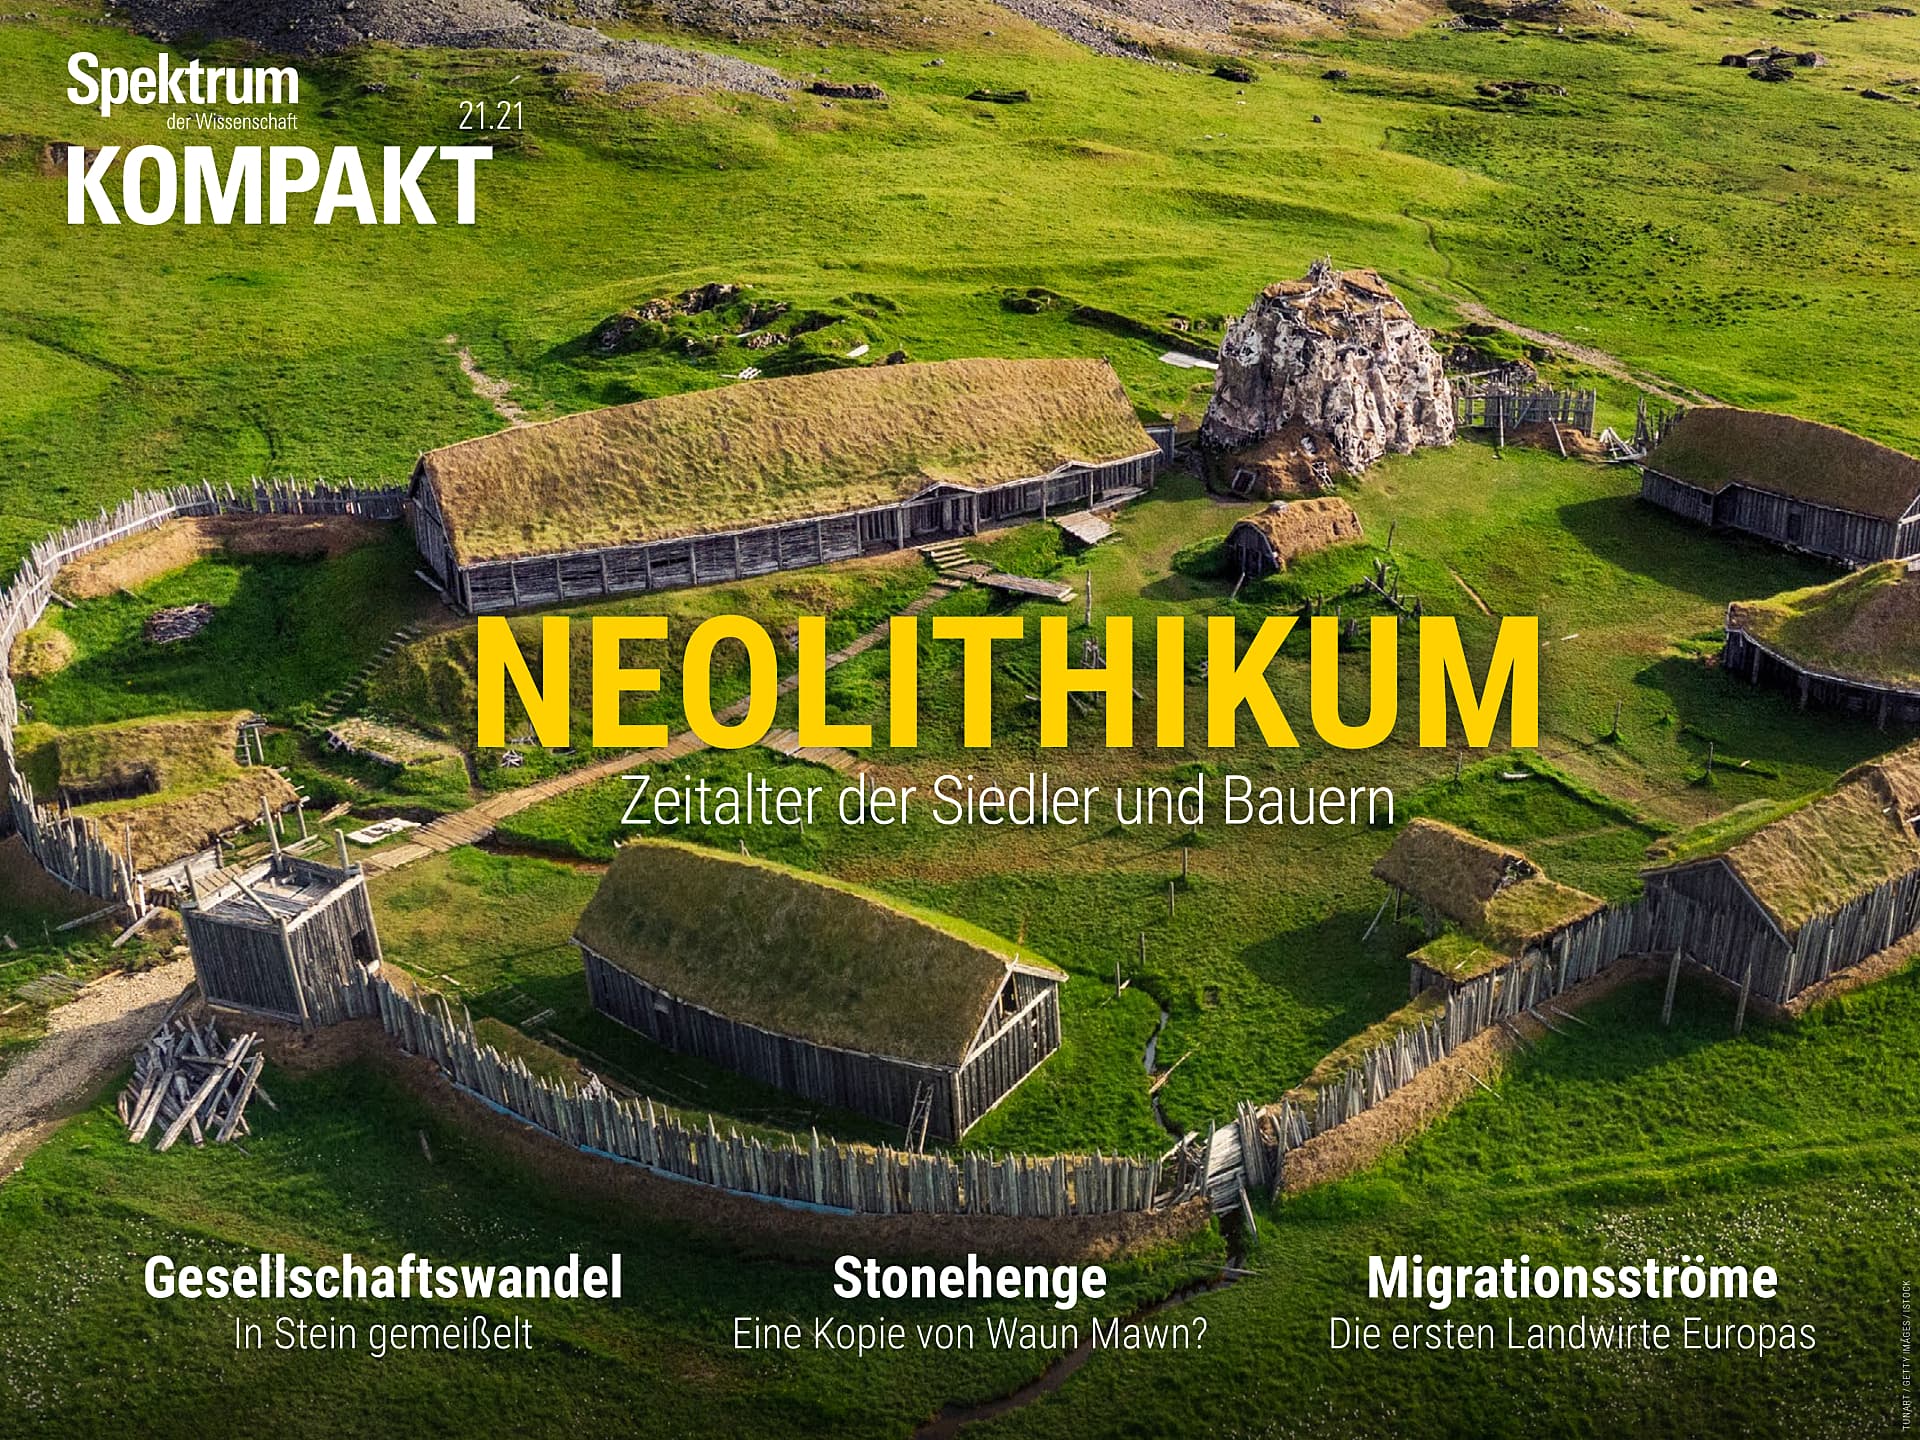 Neolithikum – Zeitalter der Siedler und Bauern